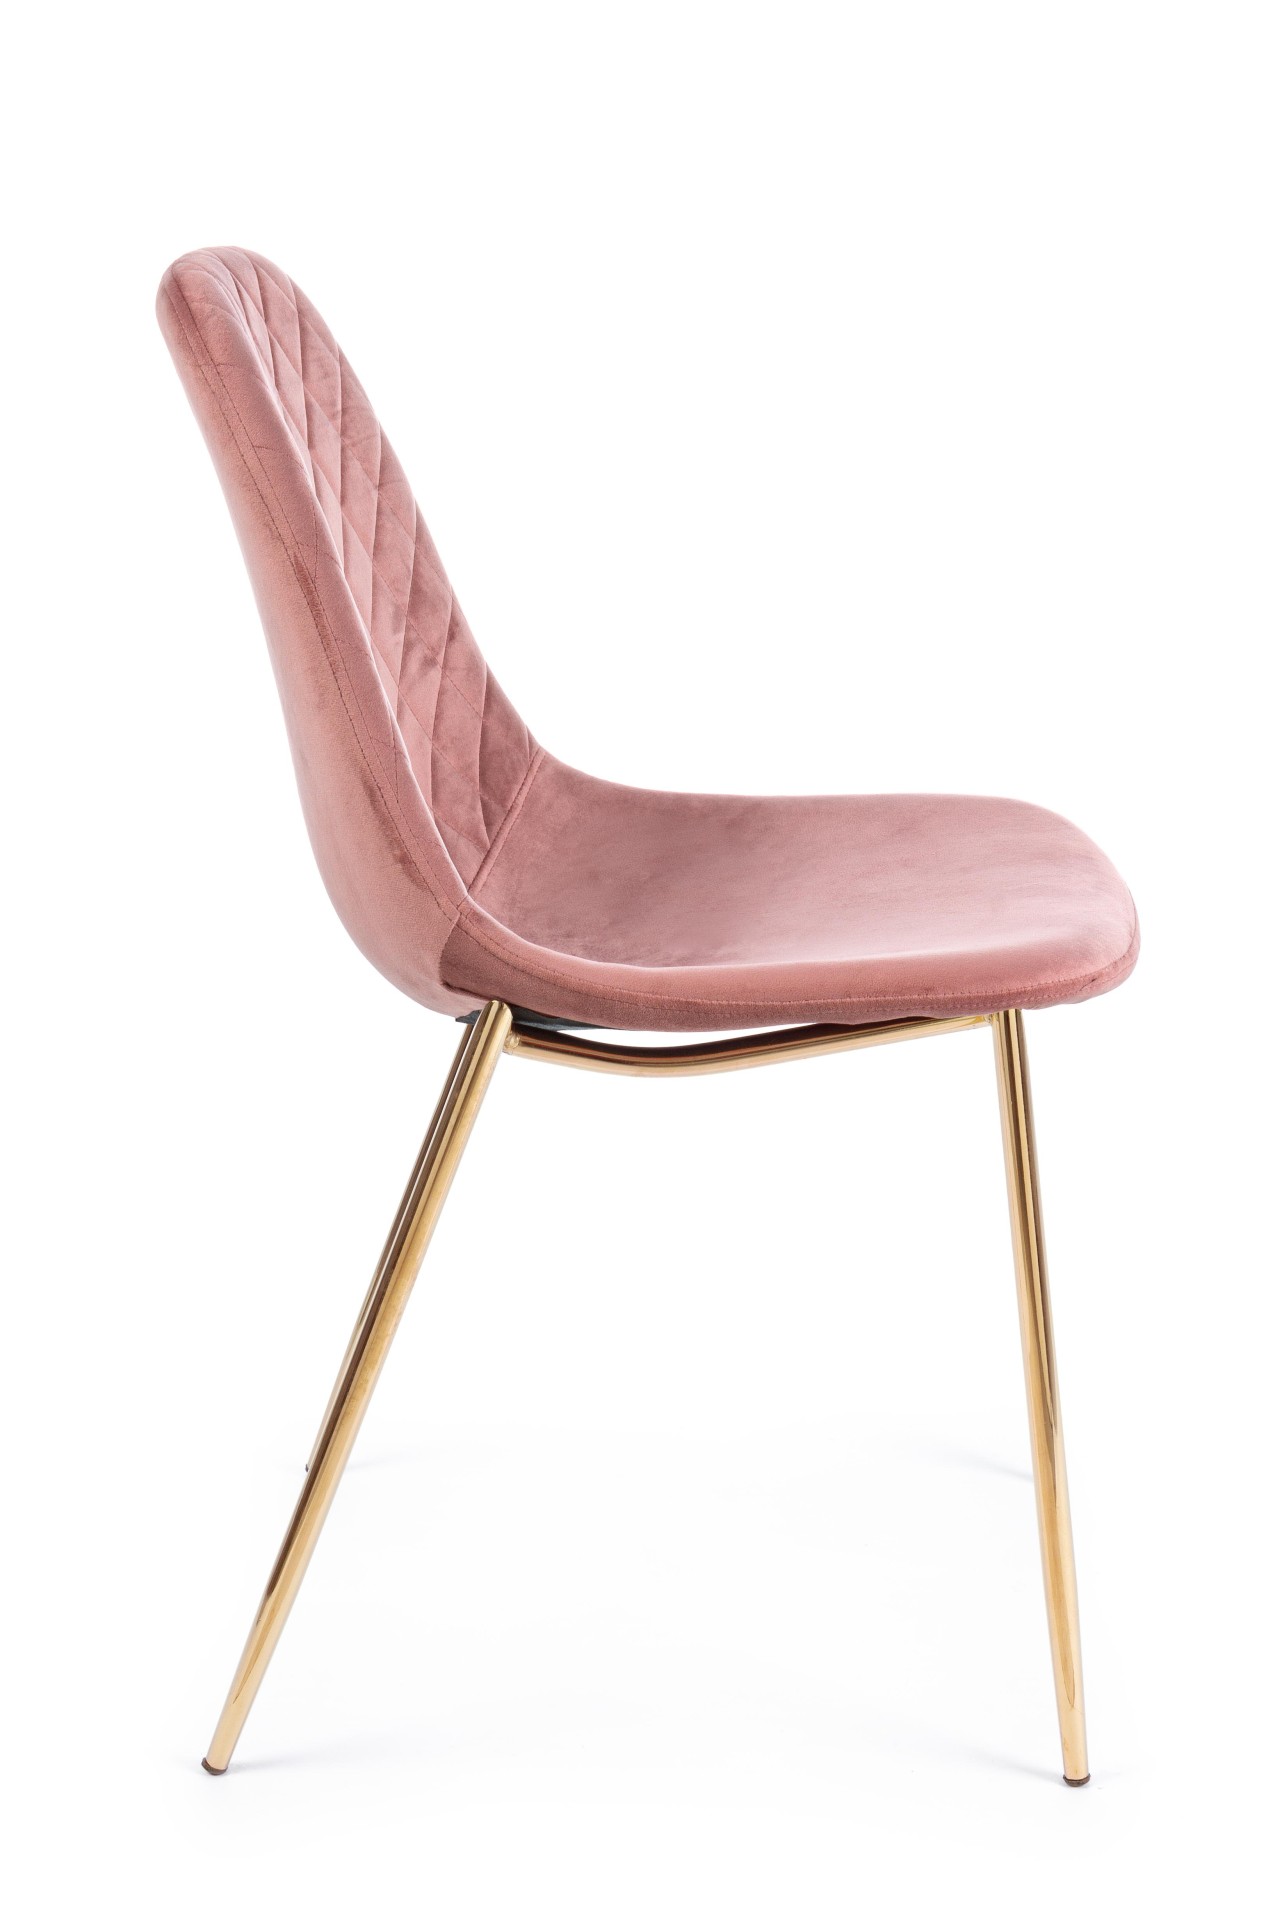 Der Esszimmerstuhl Terry überzeugt mit seinem modernem Design. Gefertigt wurde der Stuhl aus einem Samt-Bezug, welcher einen Rosa Farbton besitzt. Das Gestell ist aus Metall und ist Gold. Die Sitzhöhe beträgt 47 cm.